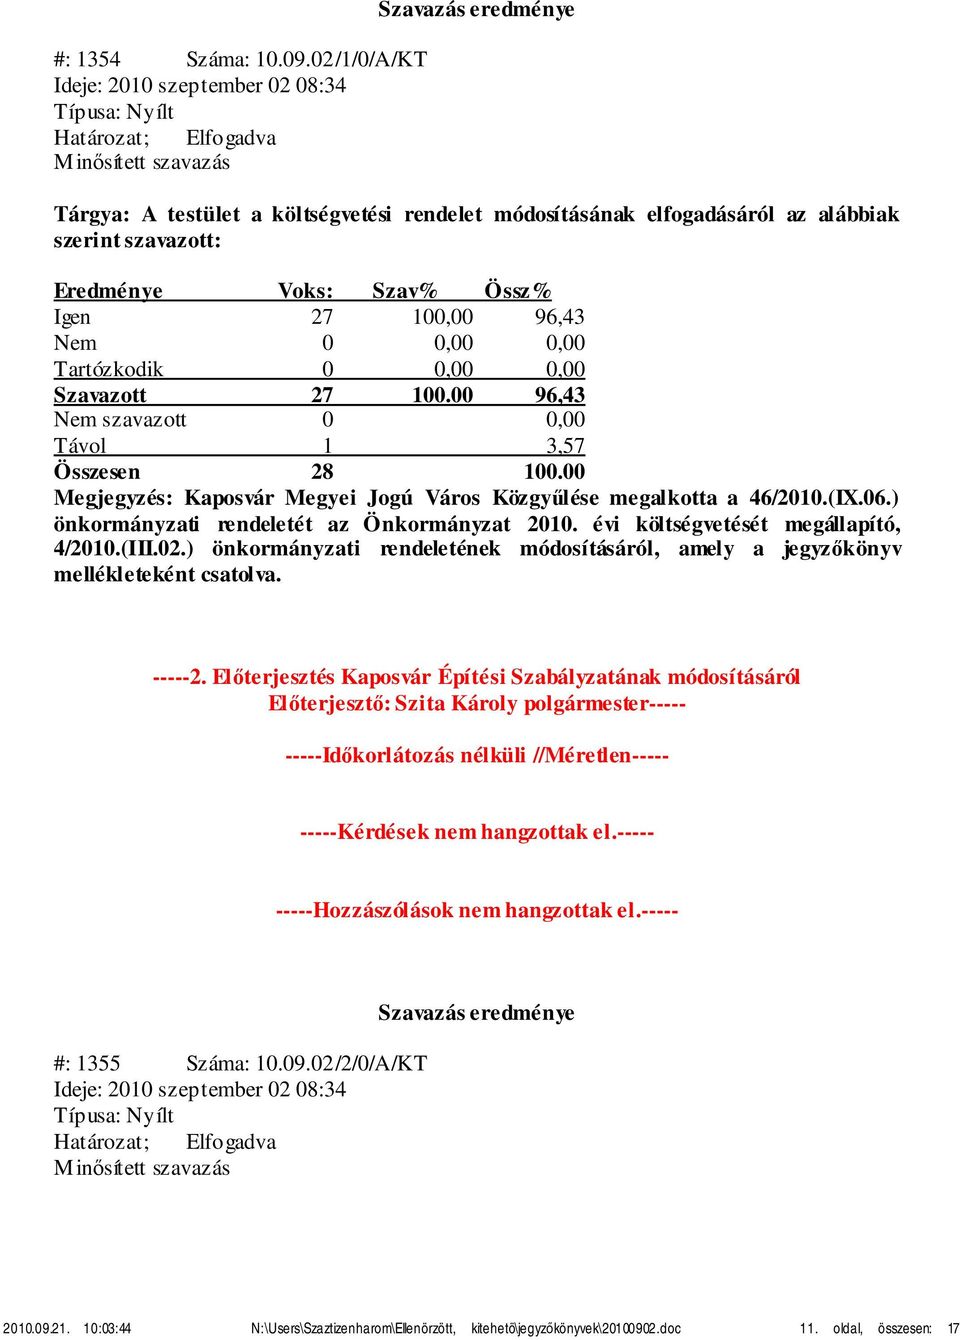 0 0,00 0,00 Megjegyzés: Kaposvár Megyei Jogú Város Közgyűlése megalkotta a 46/2010.(IX.06.) önkormányzati rendeletét az Önkormányzat 2010. évi költségvetését megállapító, 4/2010.(III.02.